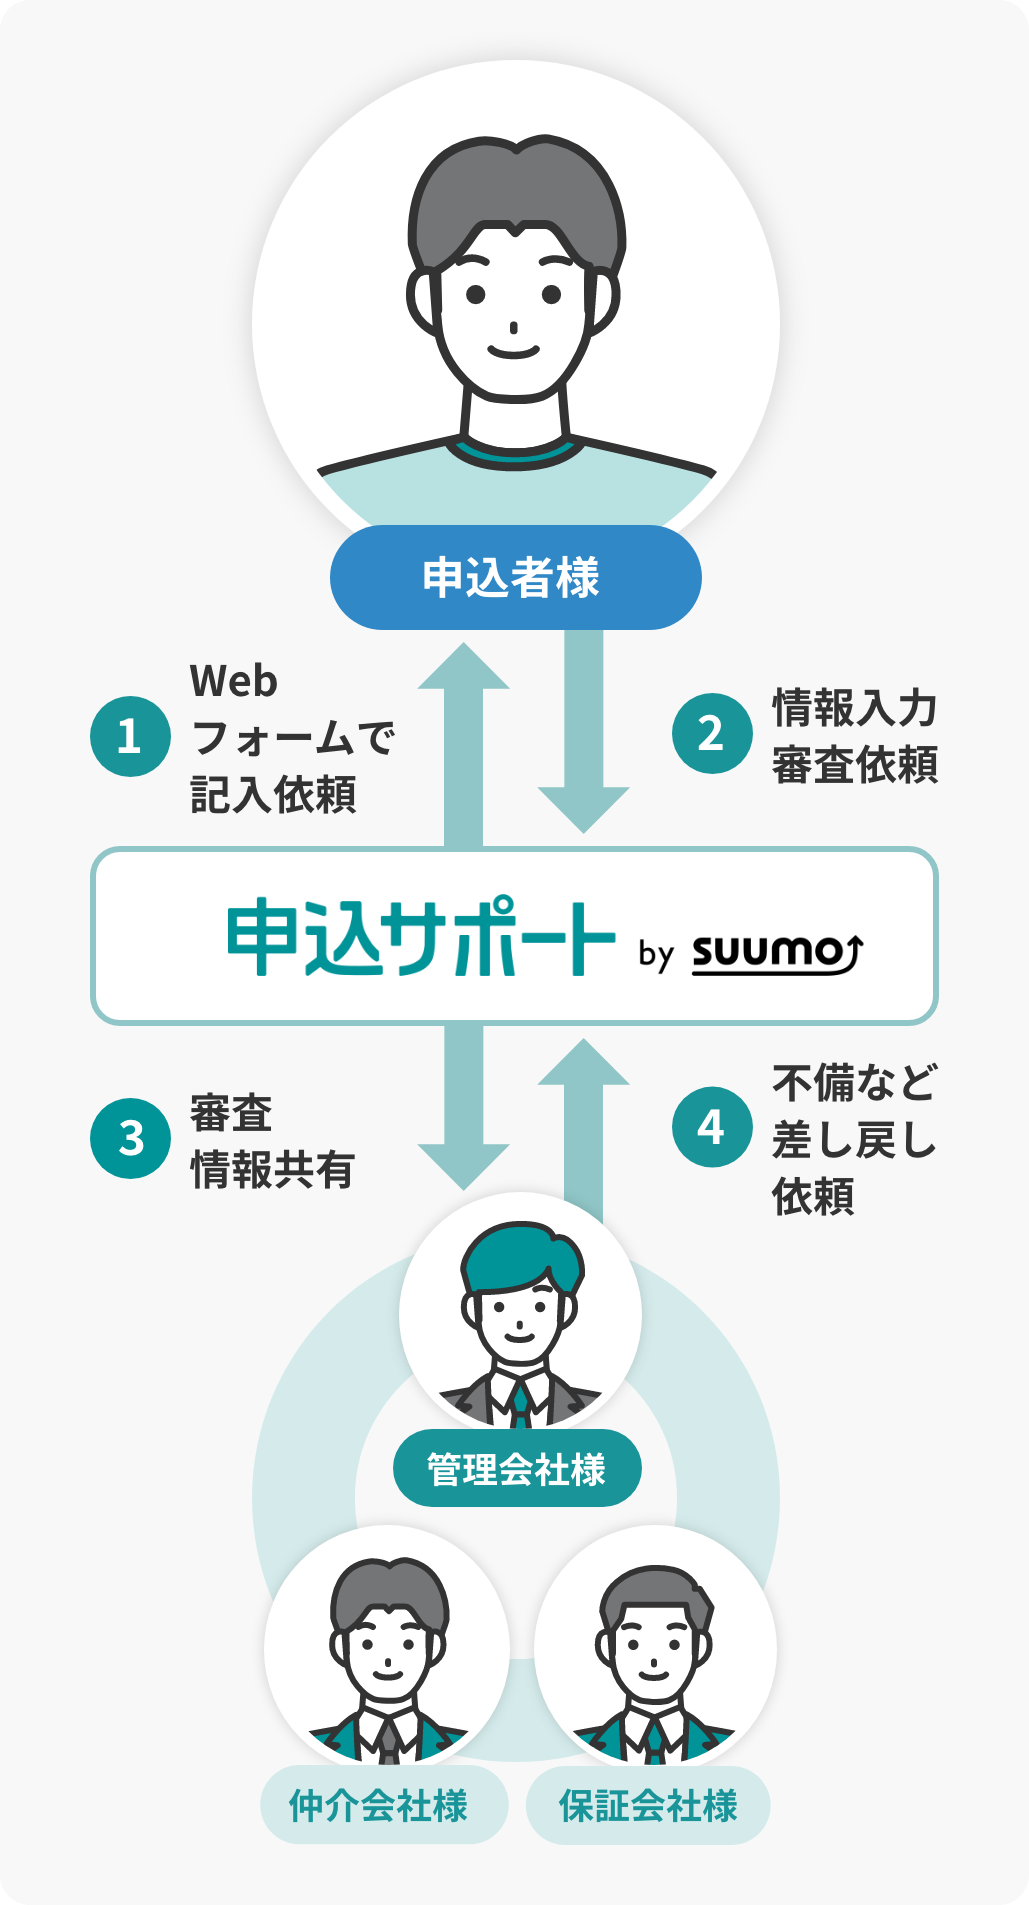 申込サポート by SUUMO | 賃貸物件の申込関連業務の効率化を支援